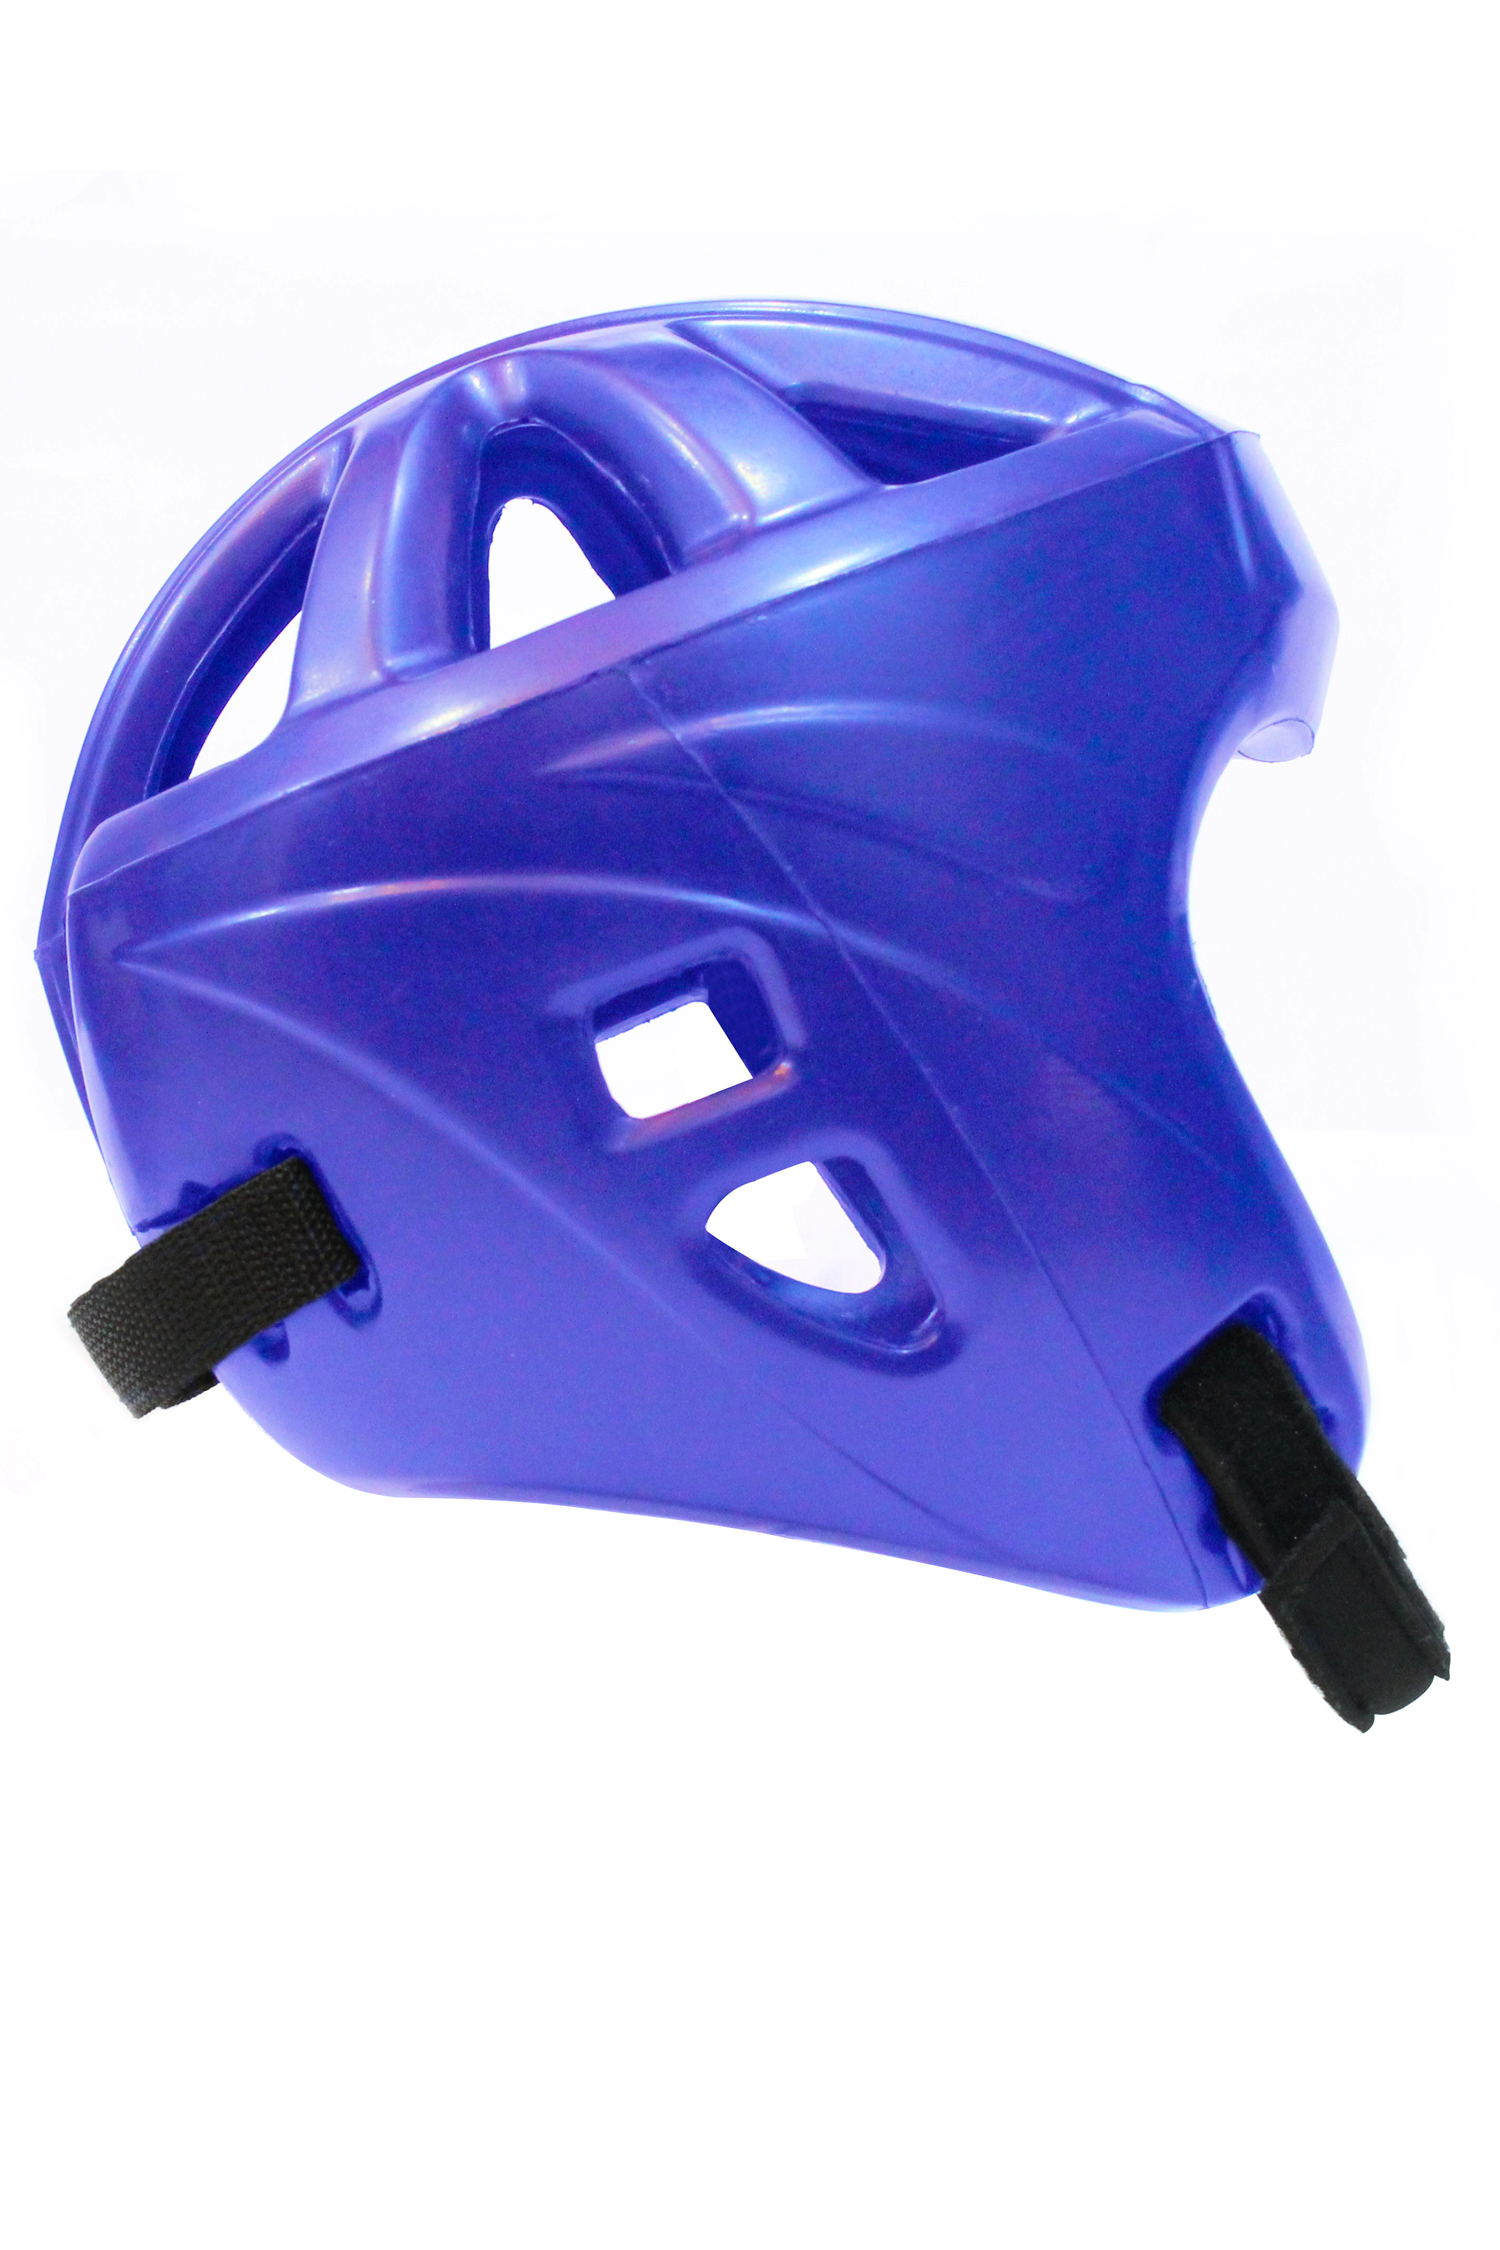 China PU polyurethaan nieuwe stijl helm leverancier China lichtgewicht bokshelm fabriek China anti-impact bokshelm fabrikant